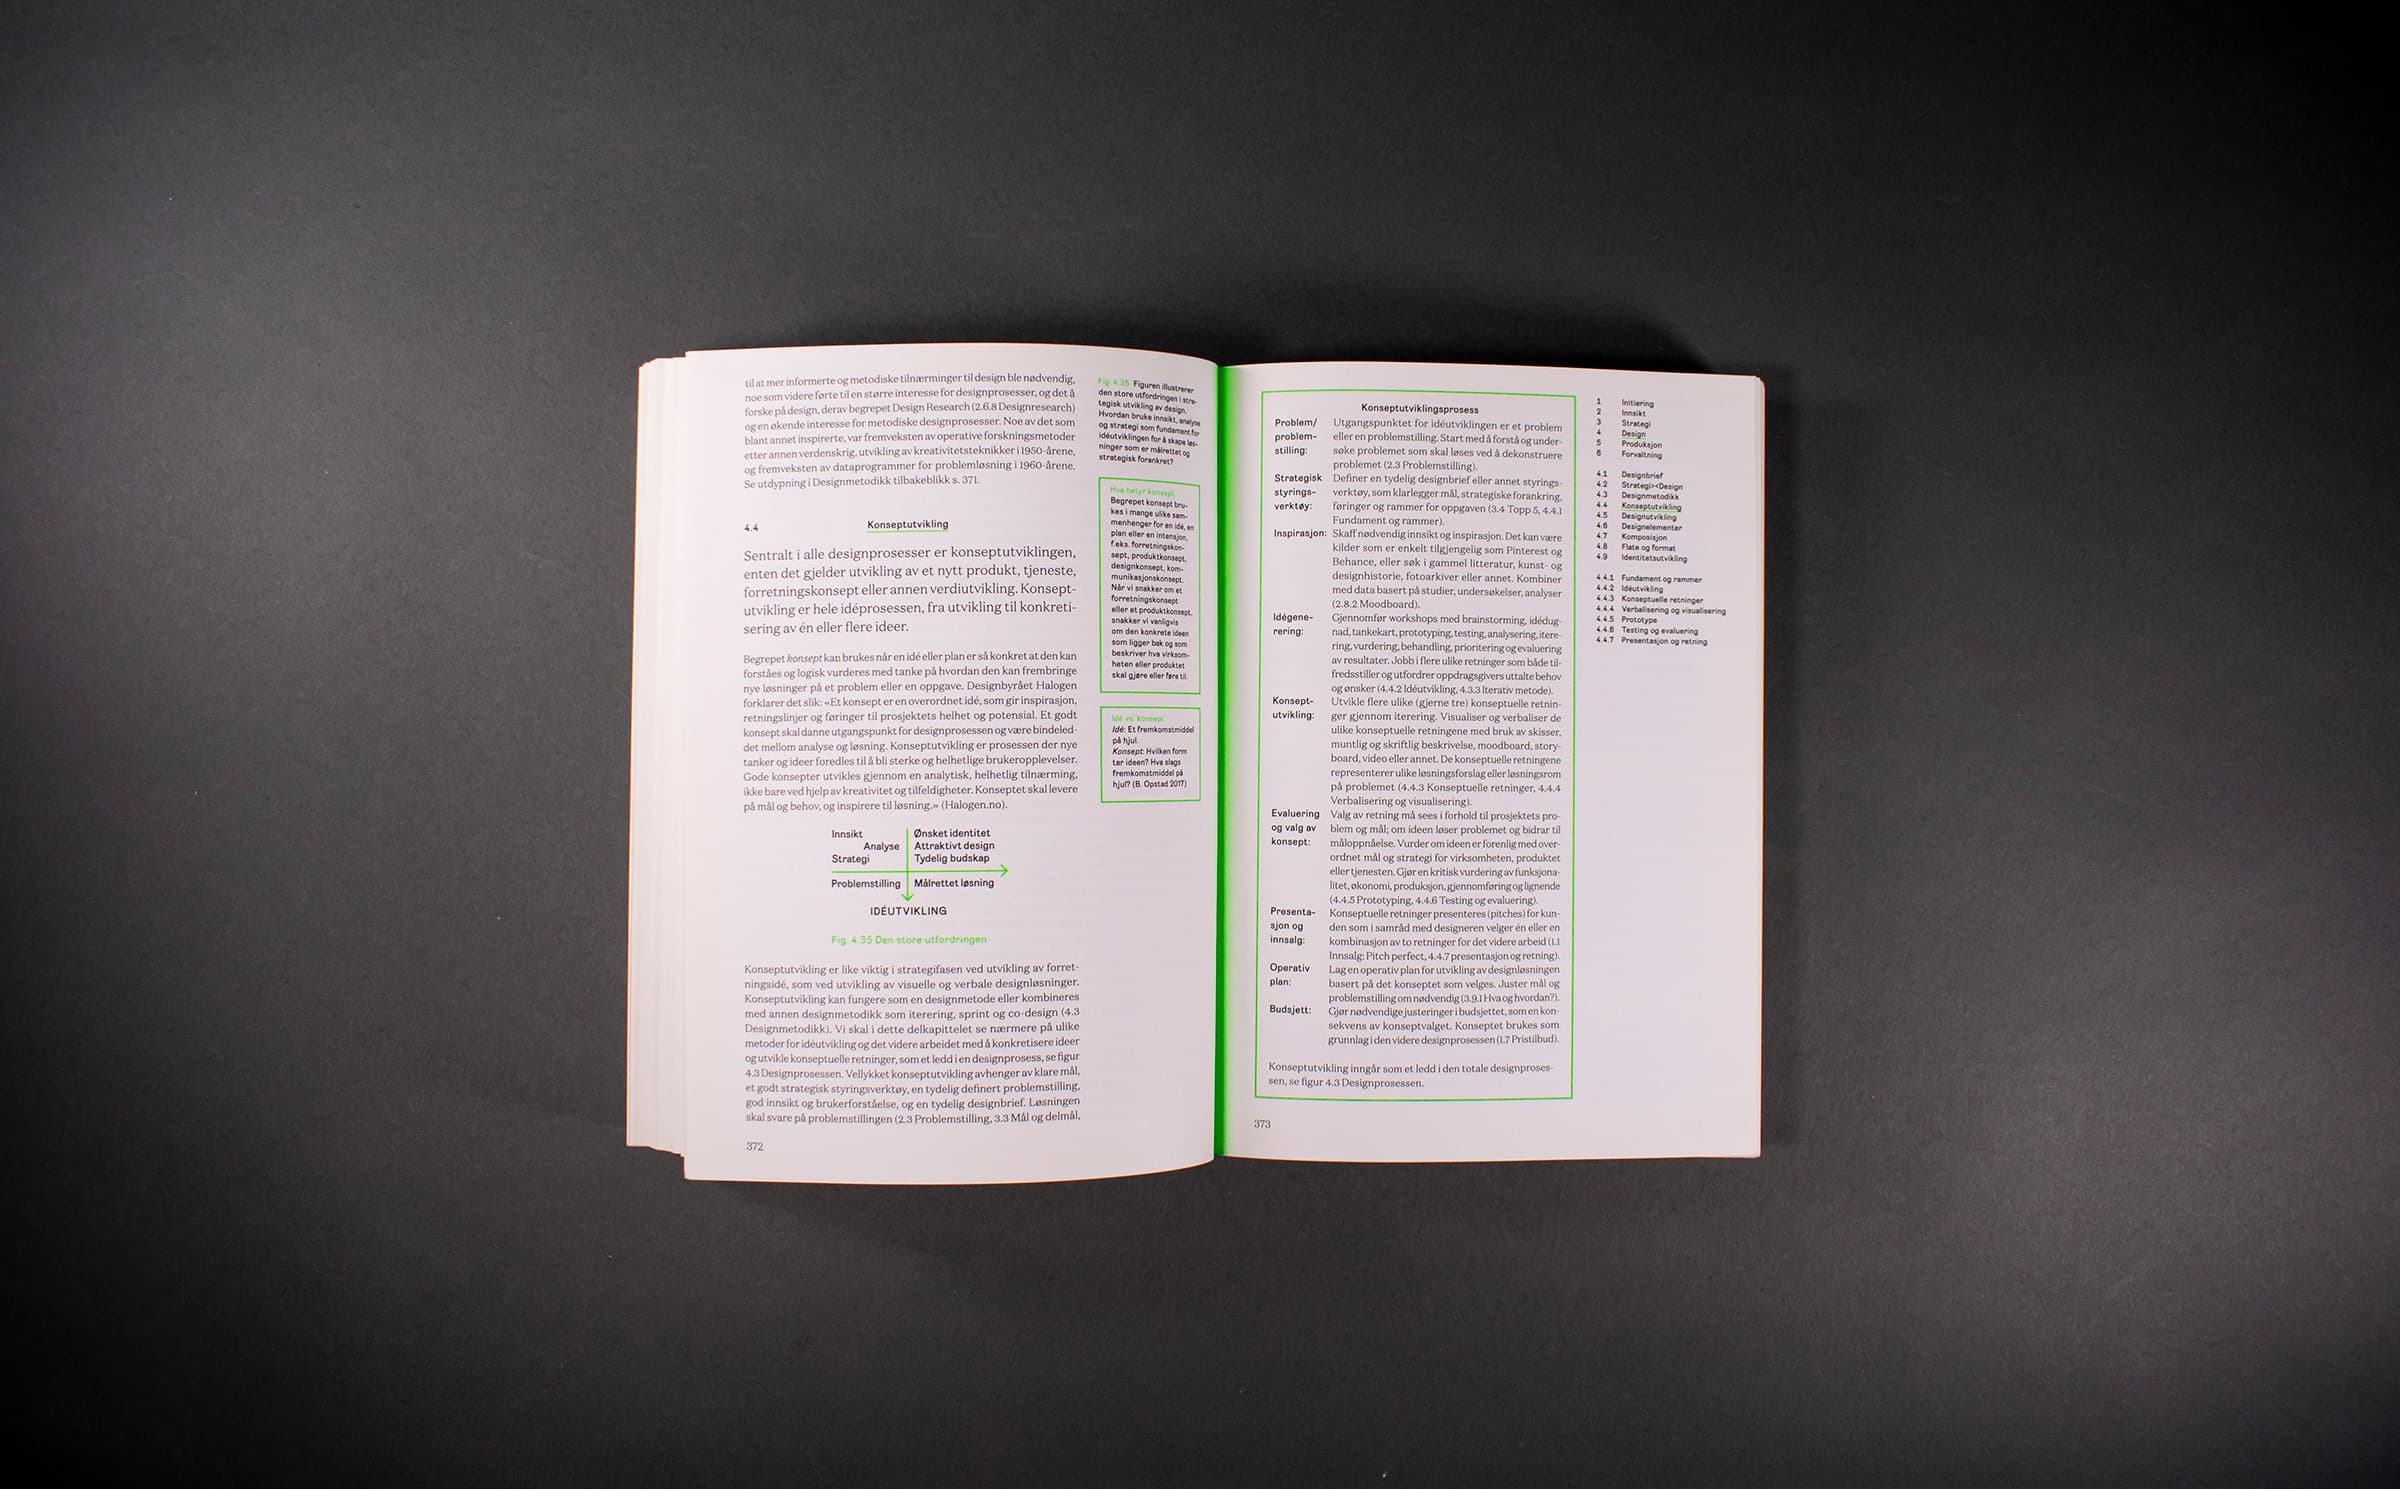 Et oppslag av layout av boken Design og Strategi som viser innholdsfortegnelsen, margtekster og rammetekster plassert rundt på siden